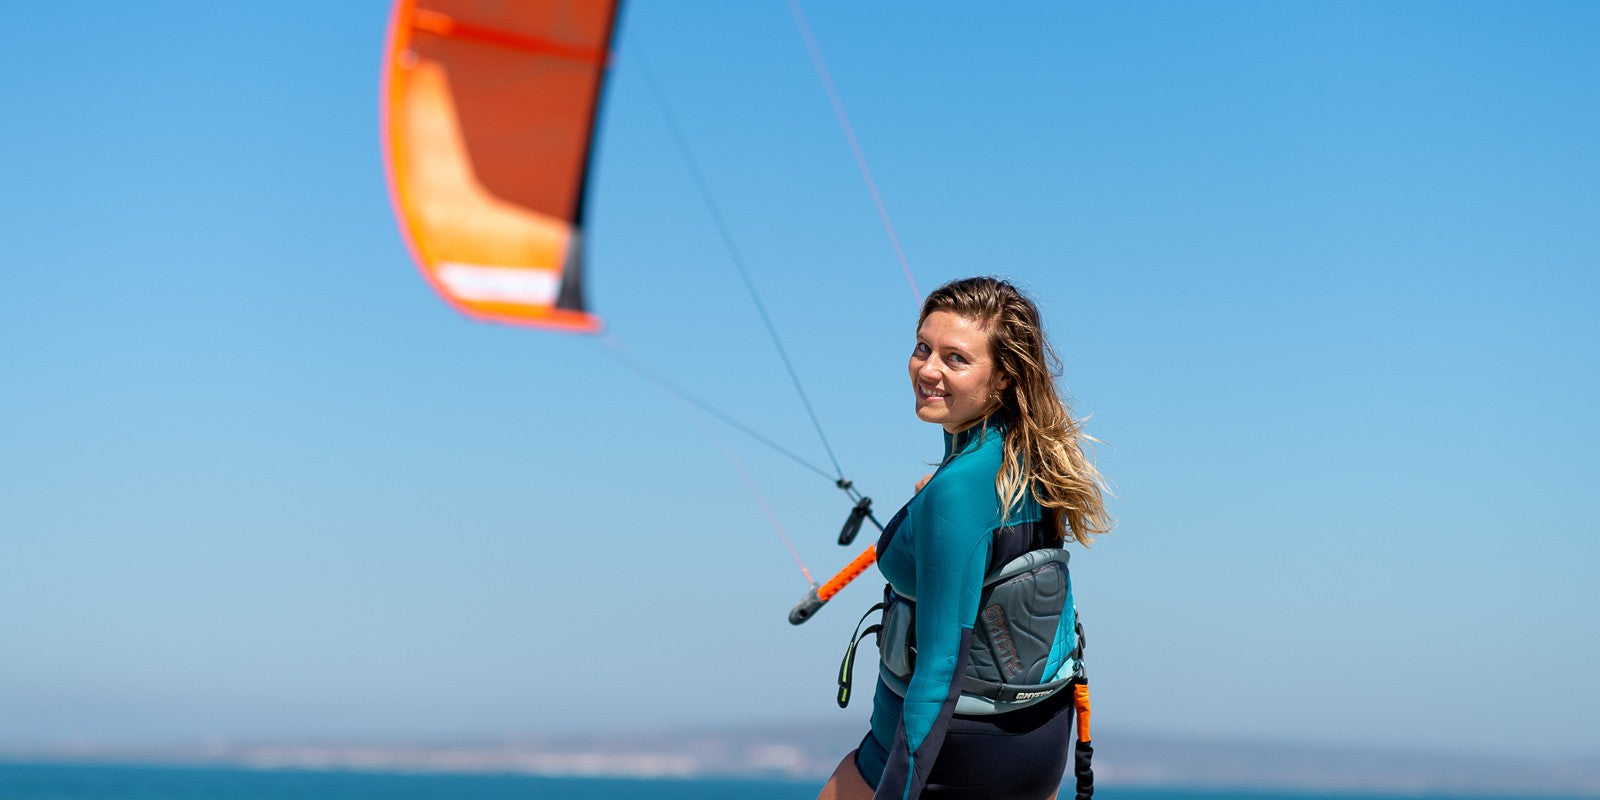 Brigette Aarts - PLKB - Kitesurfing